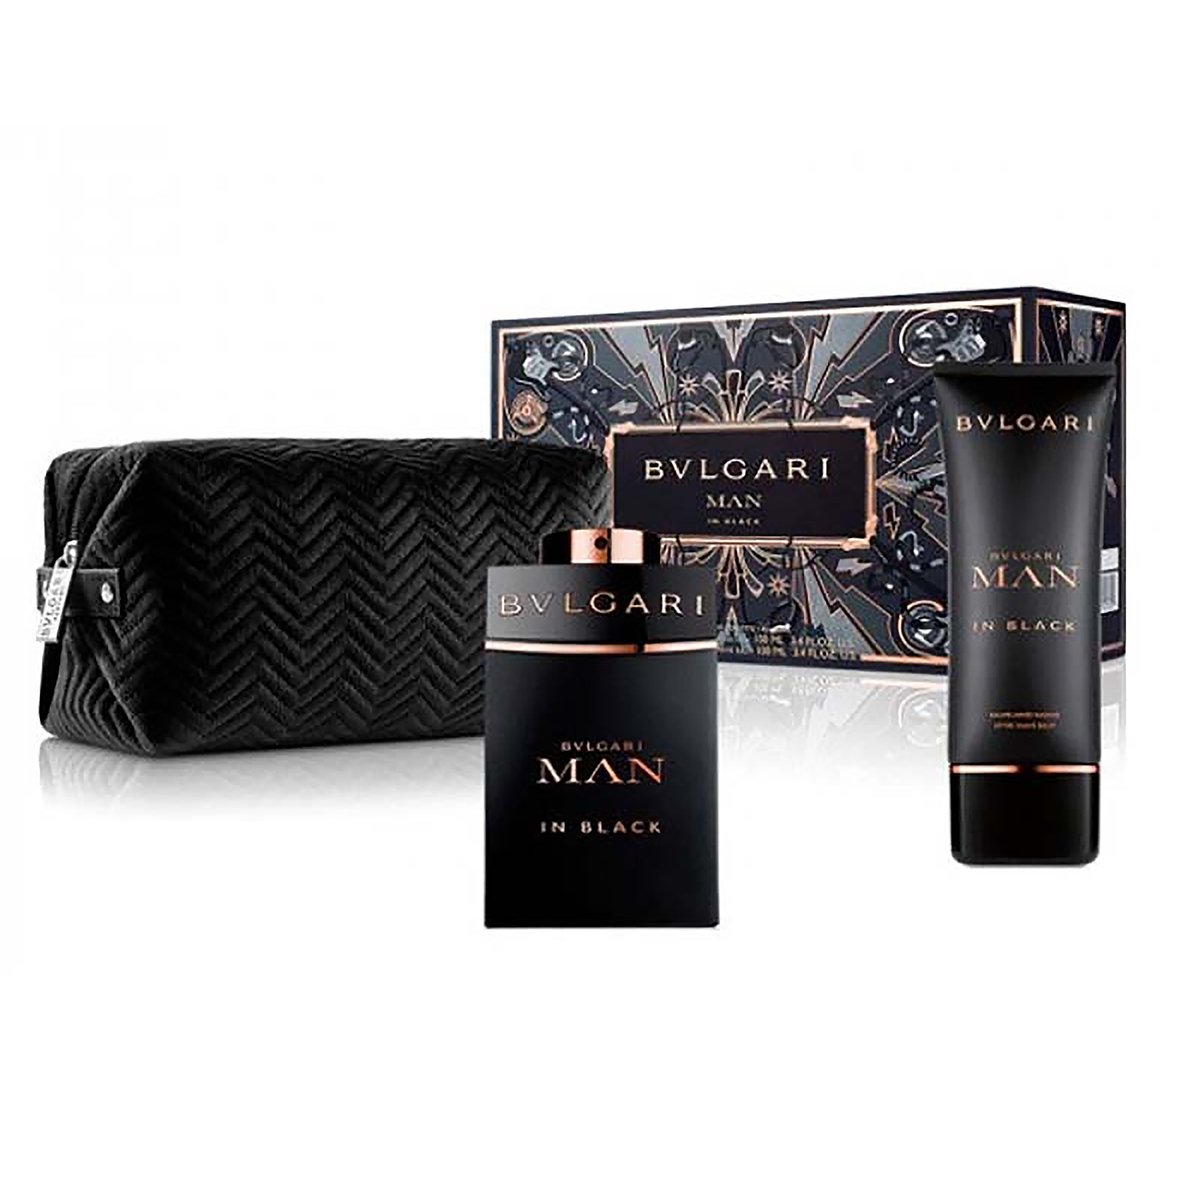 BVLGARI Man In Black Eau De Parfum Gift Set For Men, 100ml EDP + 100ml After Shave Balm + Pouch (Soft Box) Set